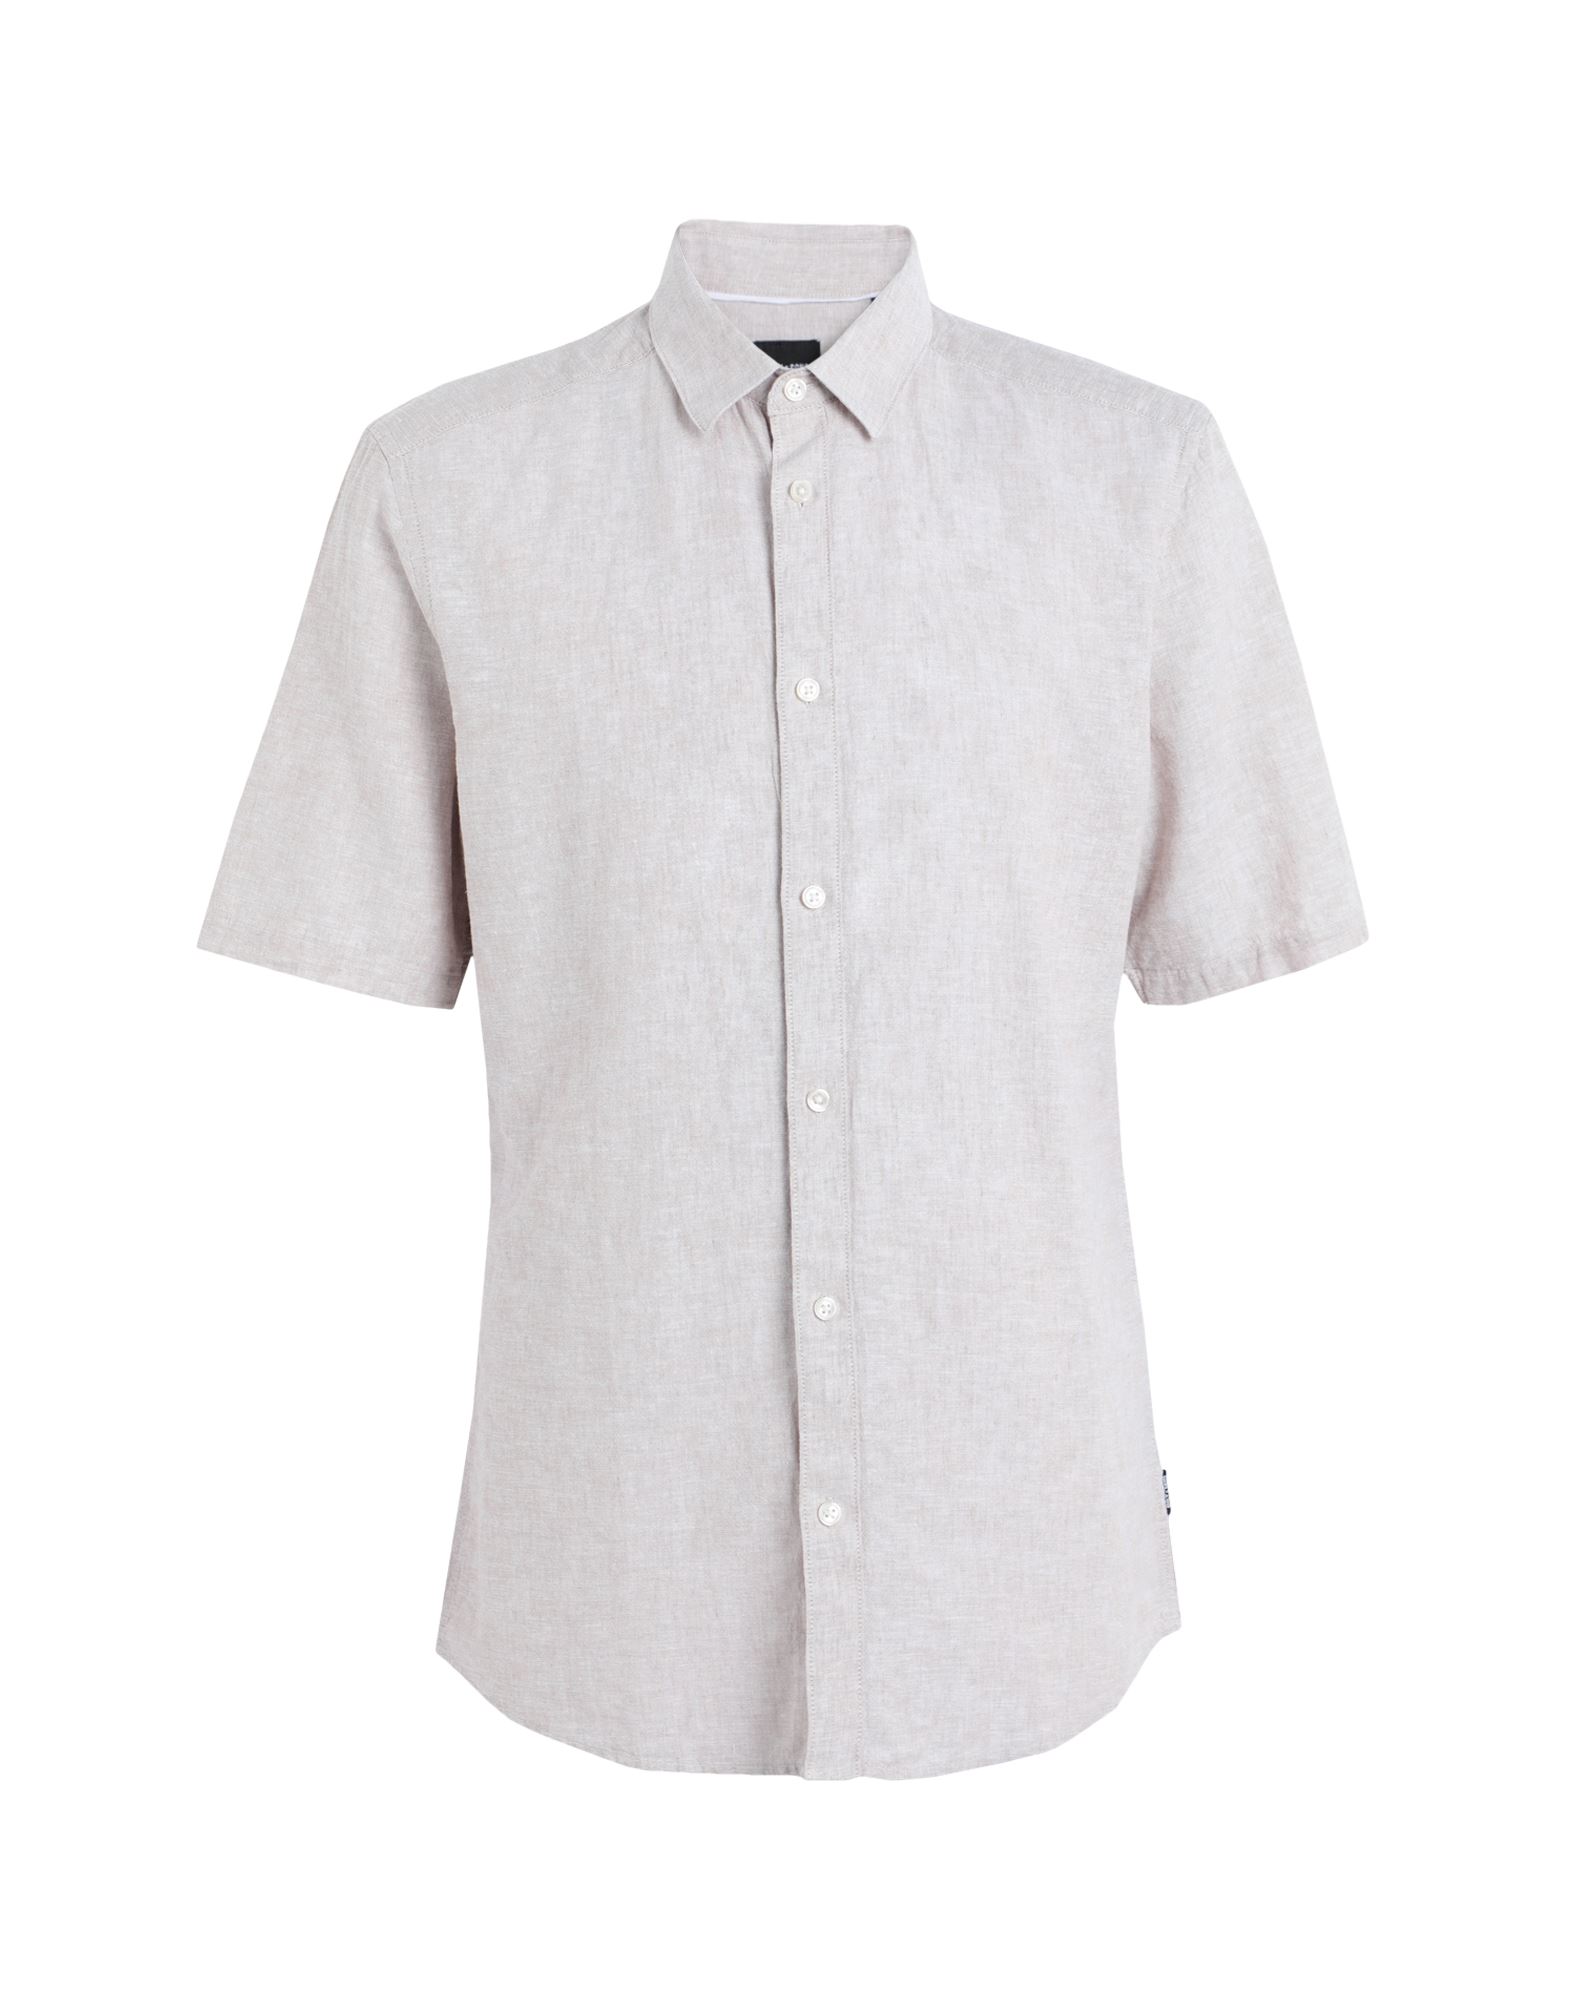 Shop Only & Sons Man Shirt Beige Size M Cotton, Linen